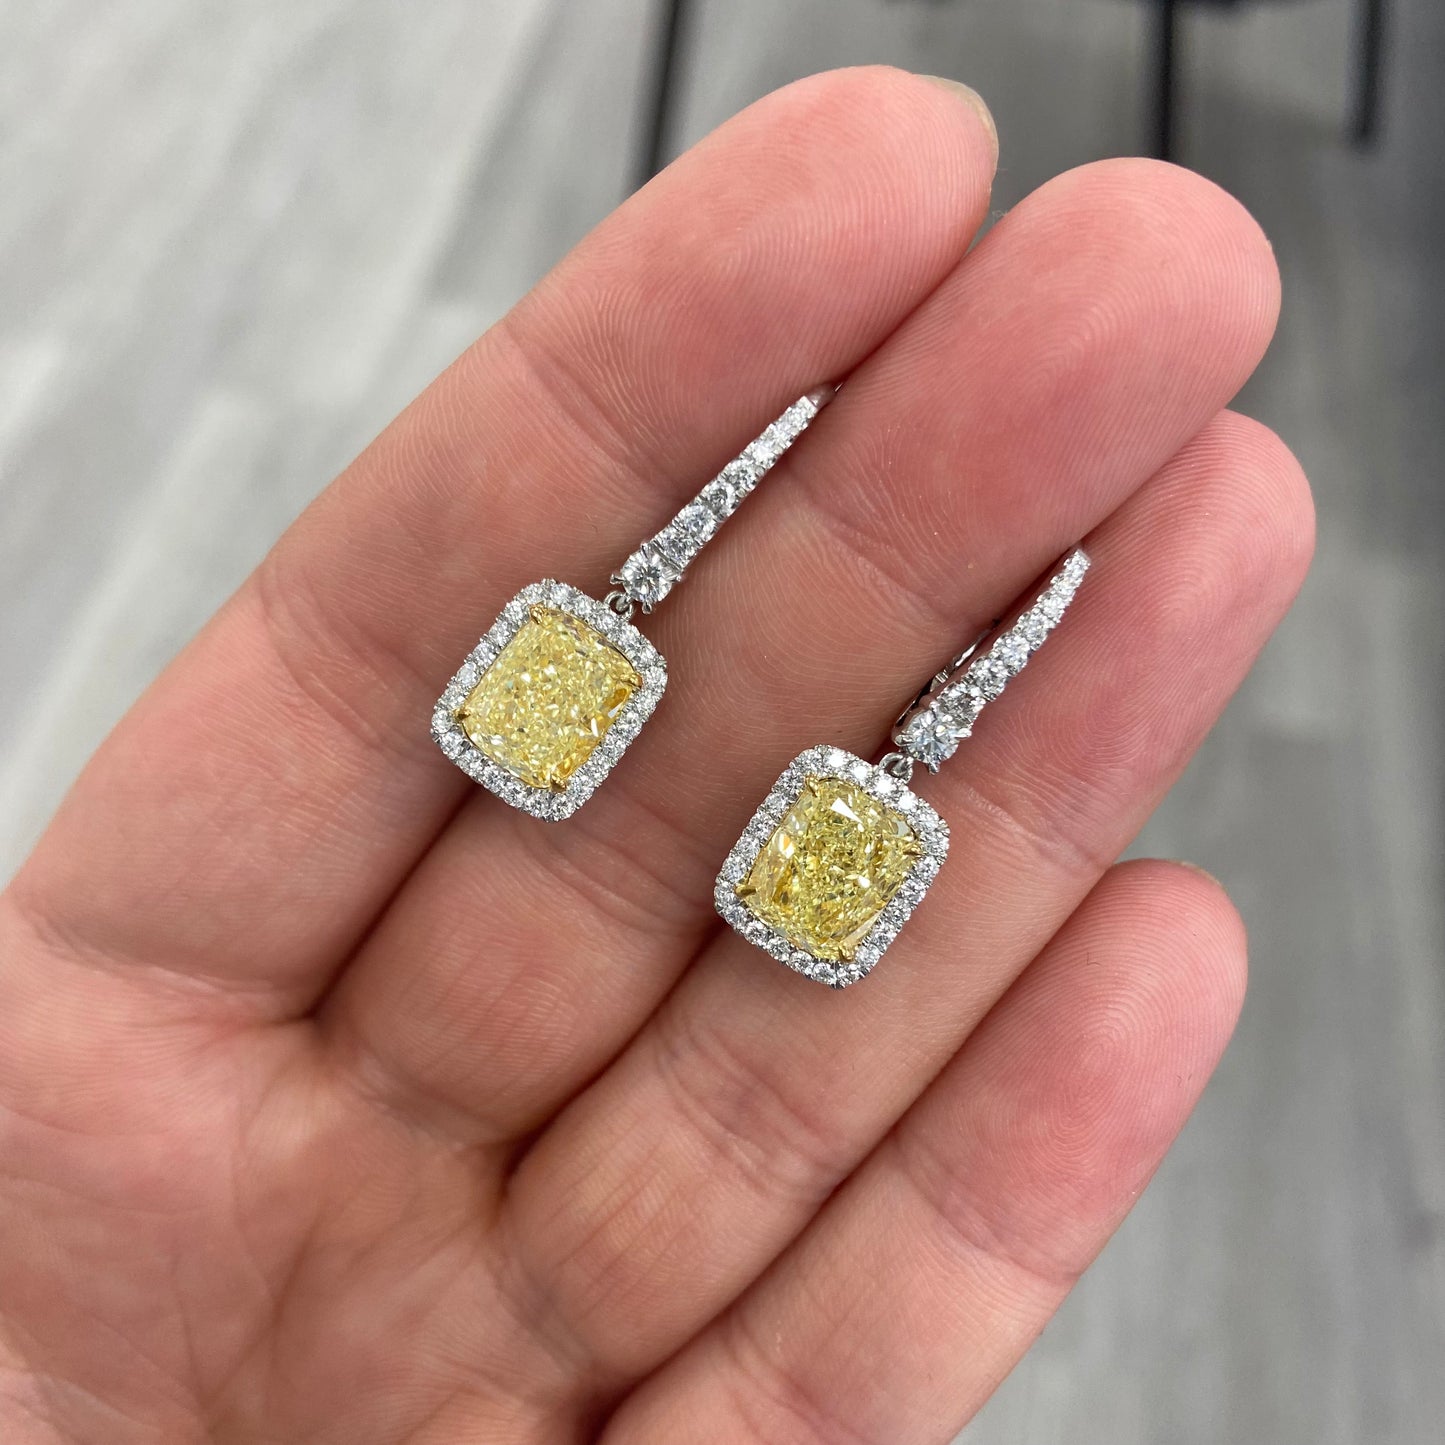 Diamond earrings, yellow diamond earrings, yellow cushion cut diamonds, yellow diamond halo, yellow diamond earrings, diamond drop earrings